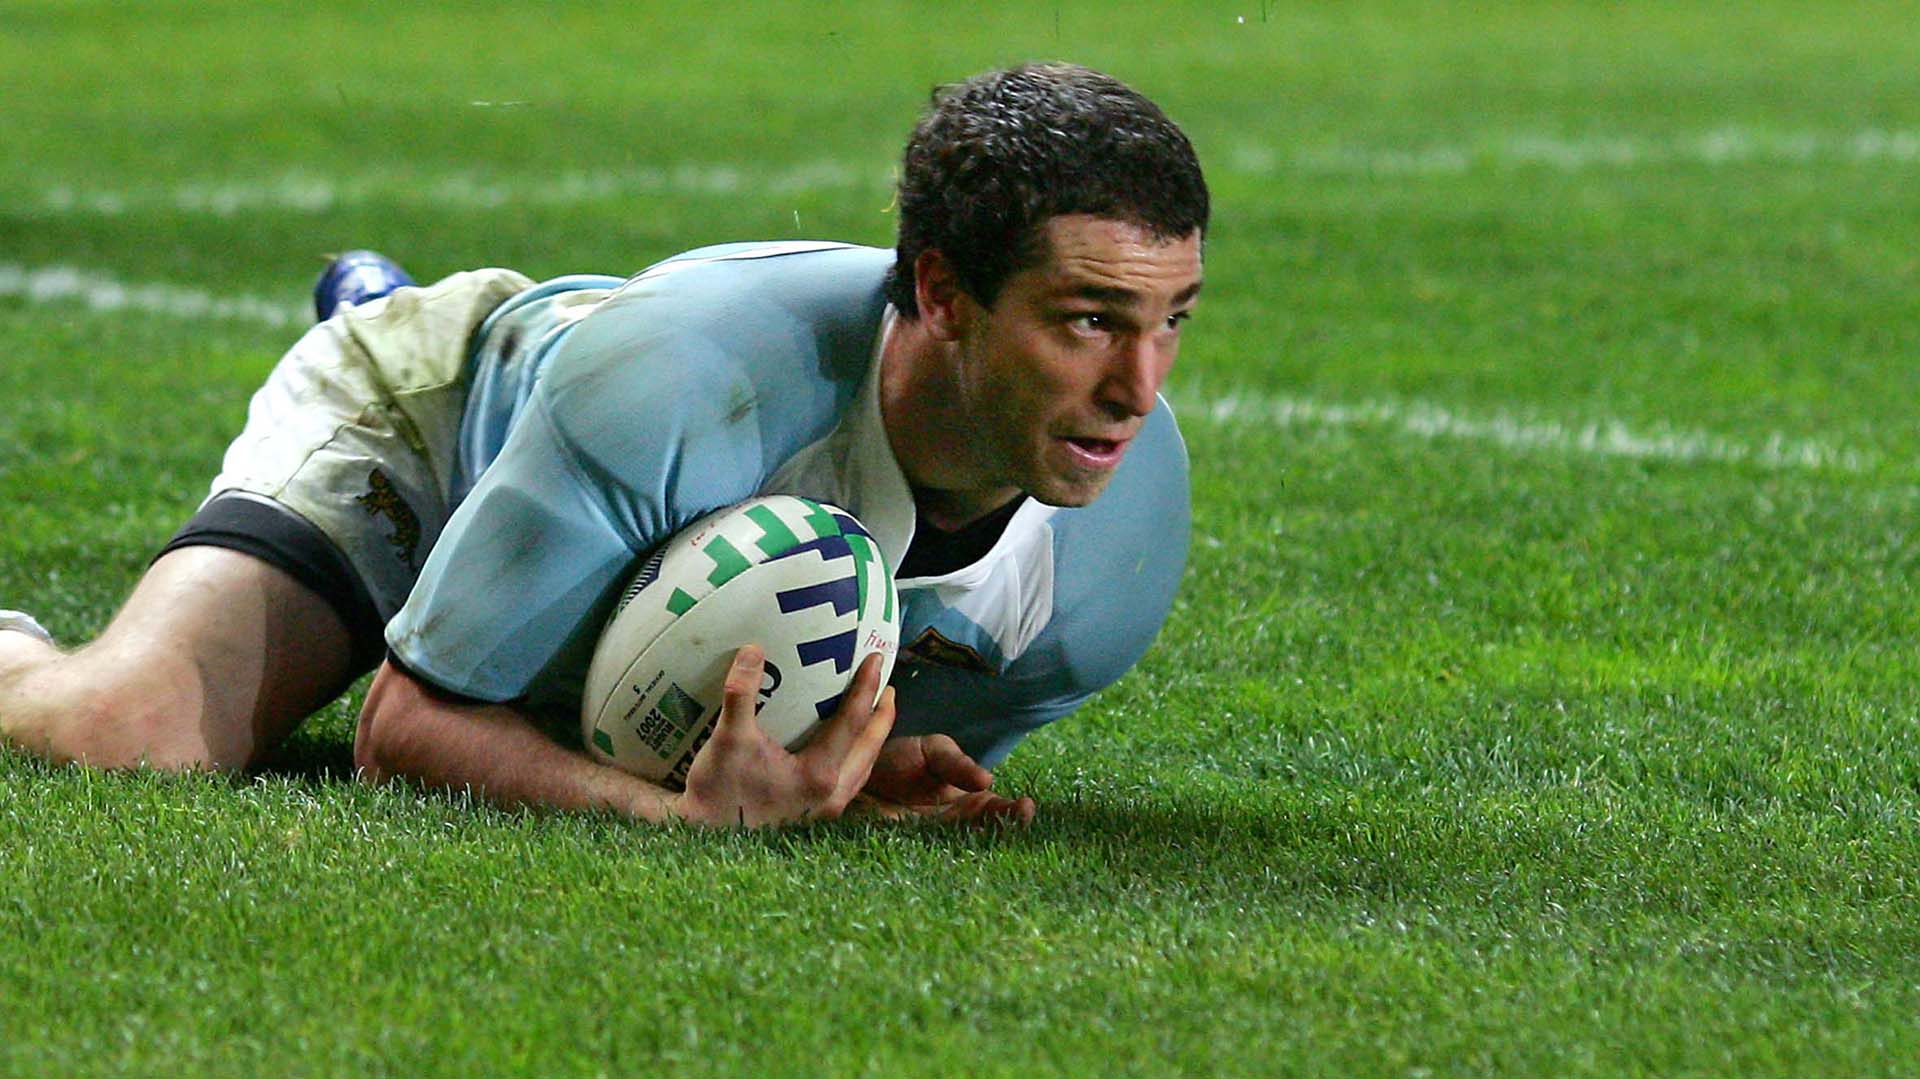 Federico Martín Aramburu, ex jugador de rugby de Los Pumas que fue baleado a la salida de un bar en París (AFP)